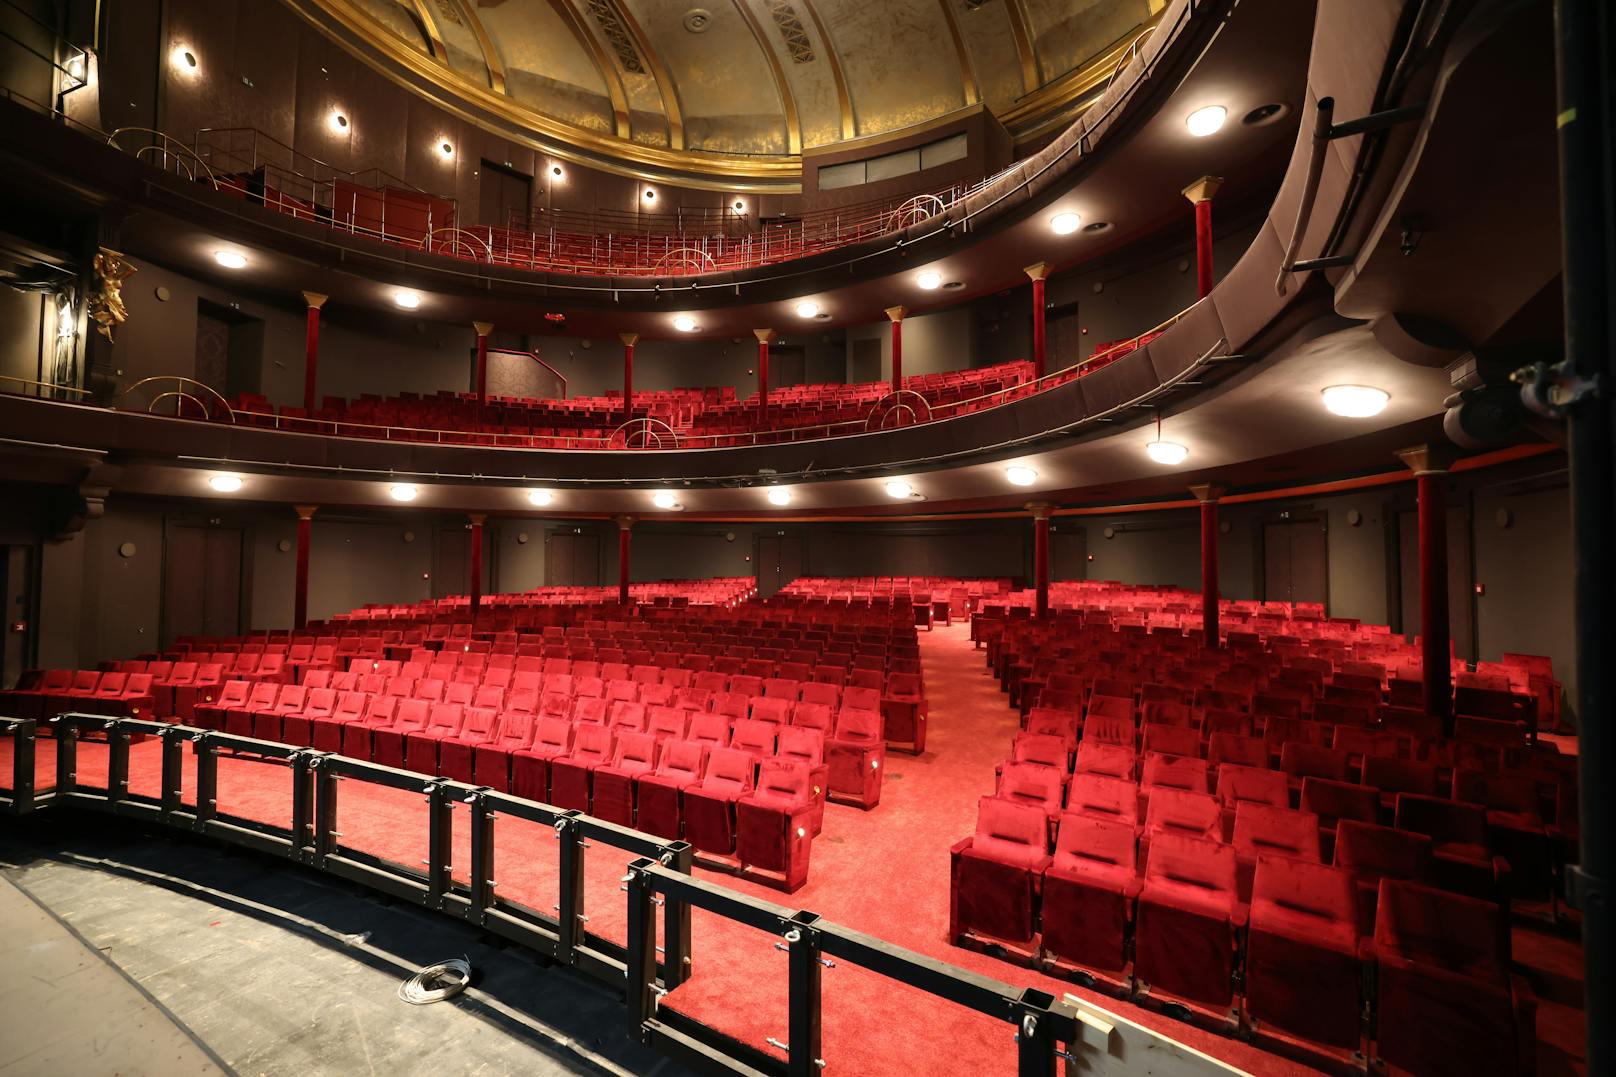 Nach 15-monatiger Renovierungszeit geht die Sanierung des historischen Theaters nun ins Finale. Schon am 28. Jänner 2021 wird es mit der Premiere des Erfolgsmusicals „Miss Saigon“ in neuem Glanz wiedereröffnet. 